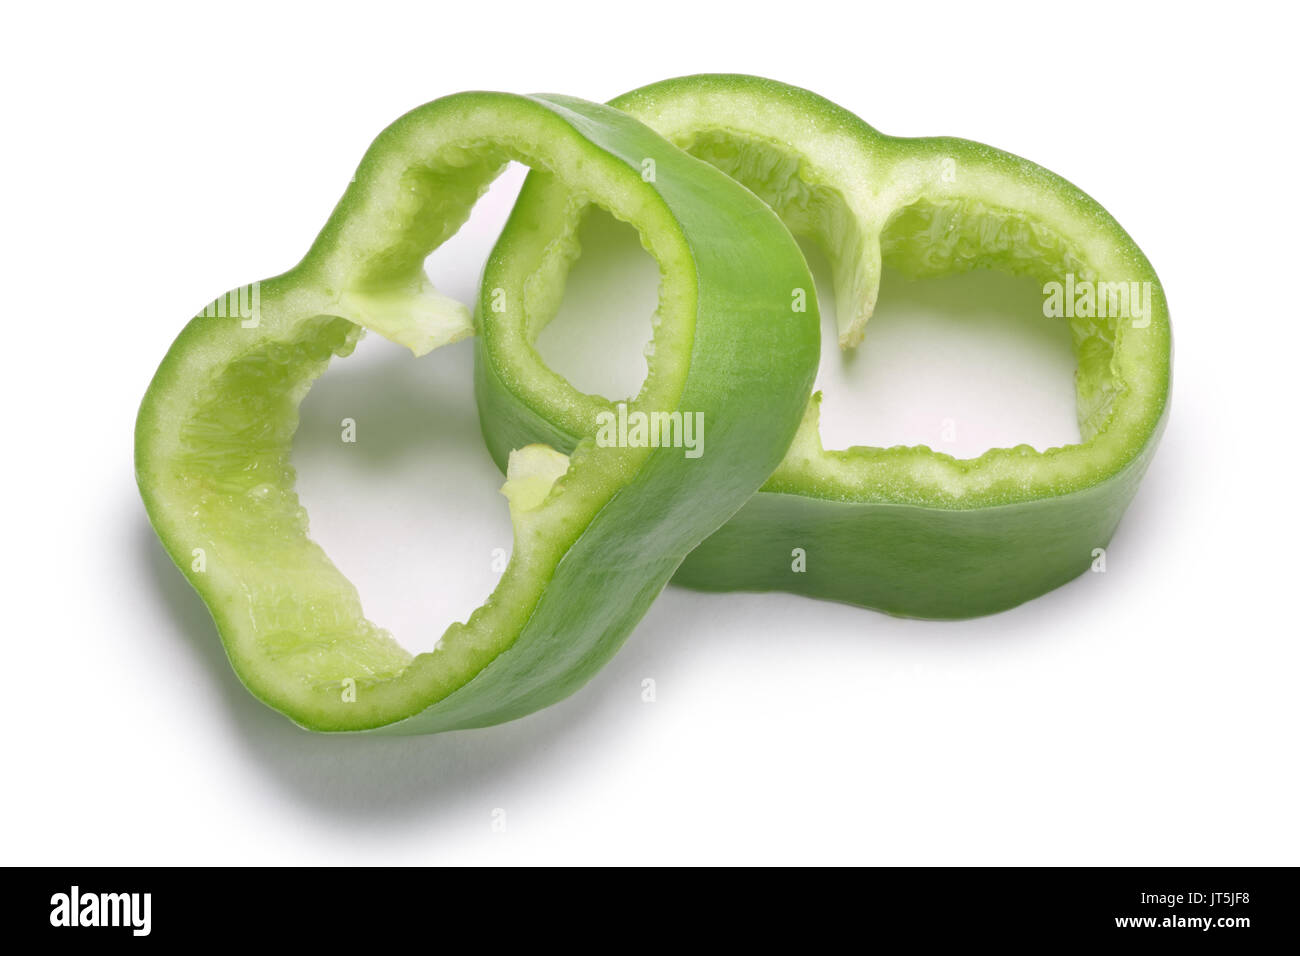 Numex Big Jim green Chile peppers, geschnitten oder gewürfelt. New Mexico pod-Typ (Capsicum annuum). Beschneidungspfade, Schatten getrennt, Ansicht von oben Stockfoto